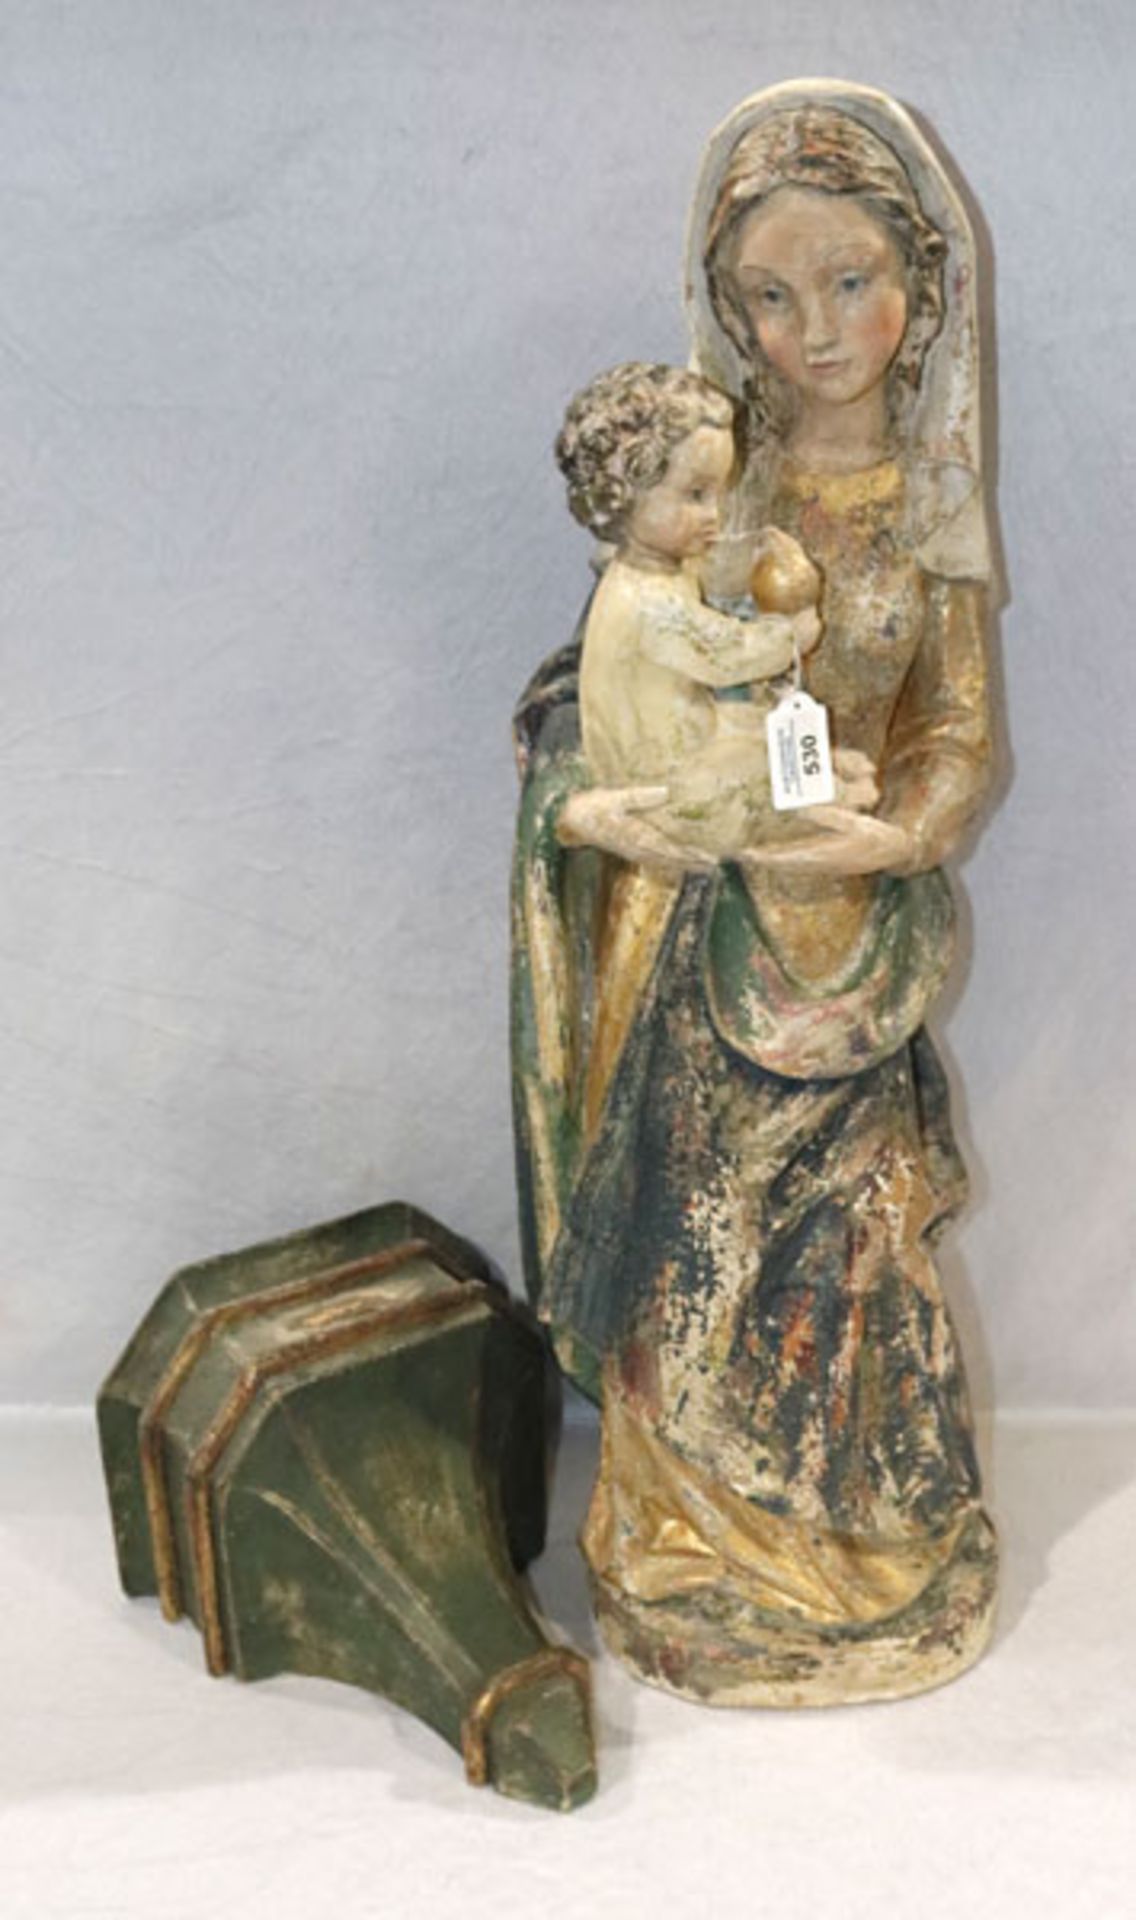 Holz Figurenskulptur 'Maria mit Kind', 19. Jahrhundert, farbig gefaßt, Fassung sehr beschädigt, H